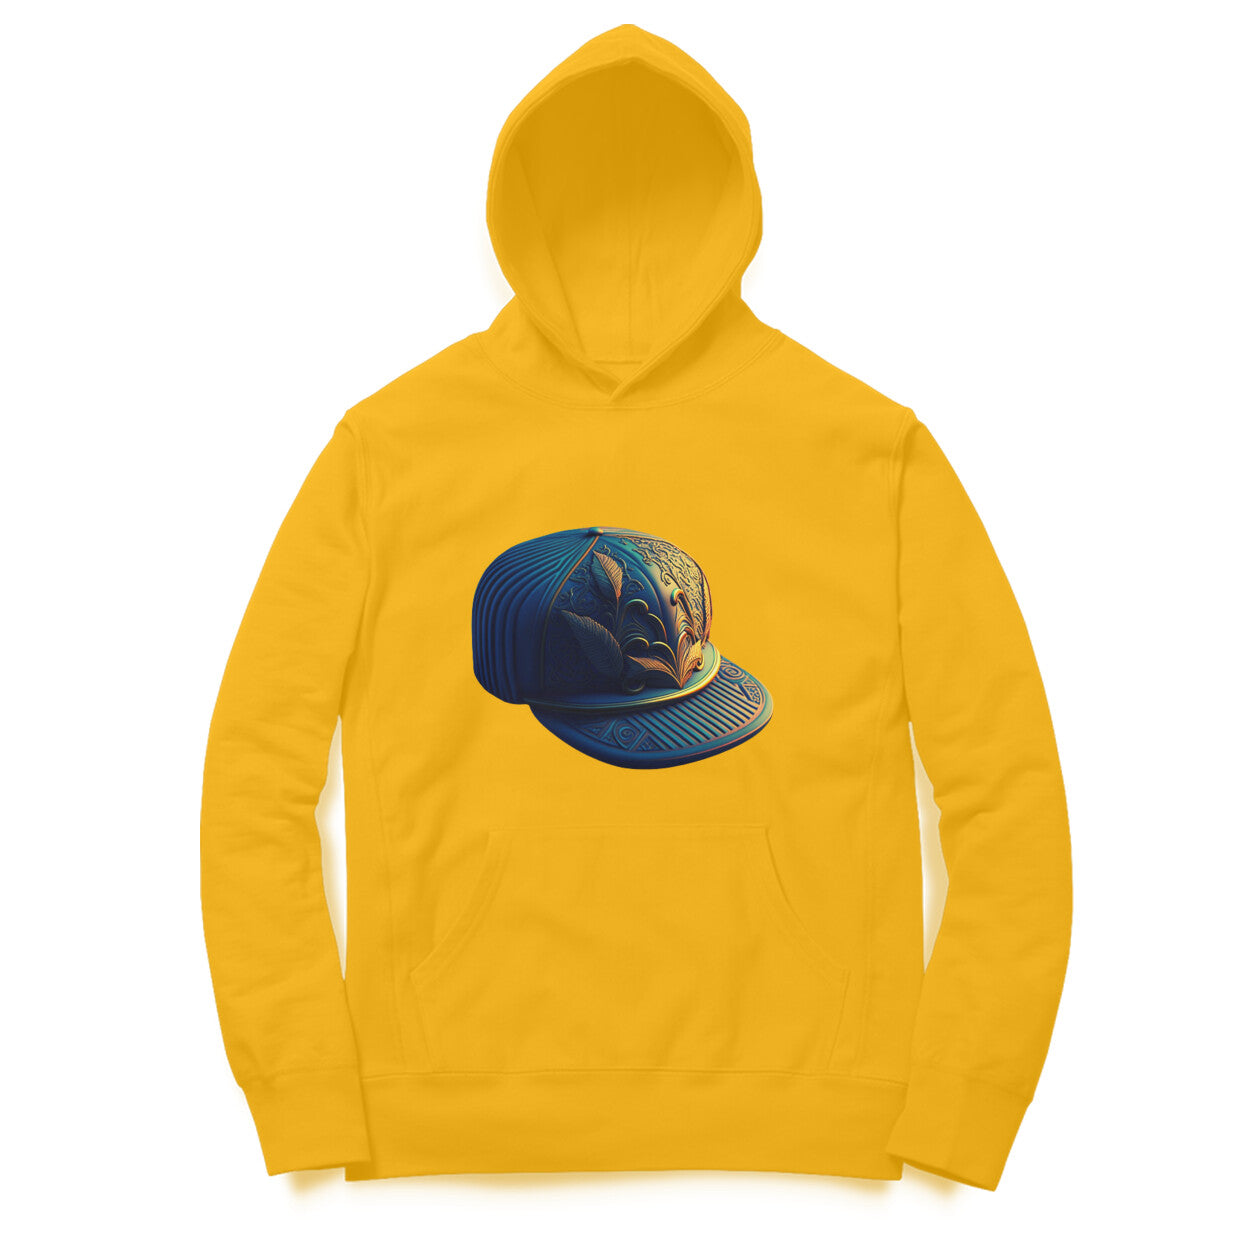 Designer Cap' hoodie